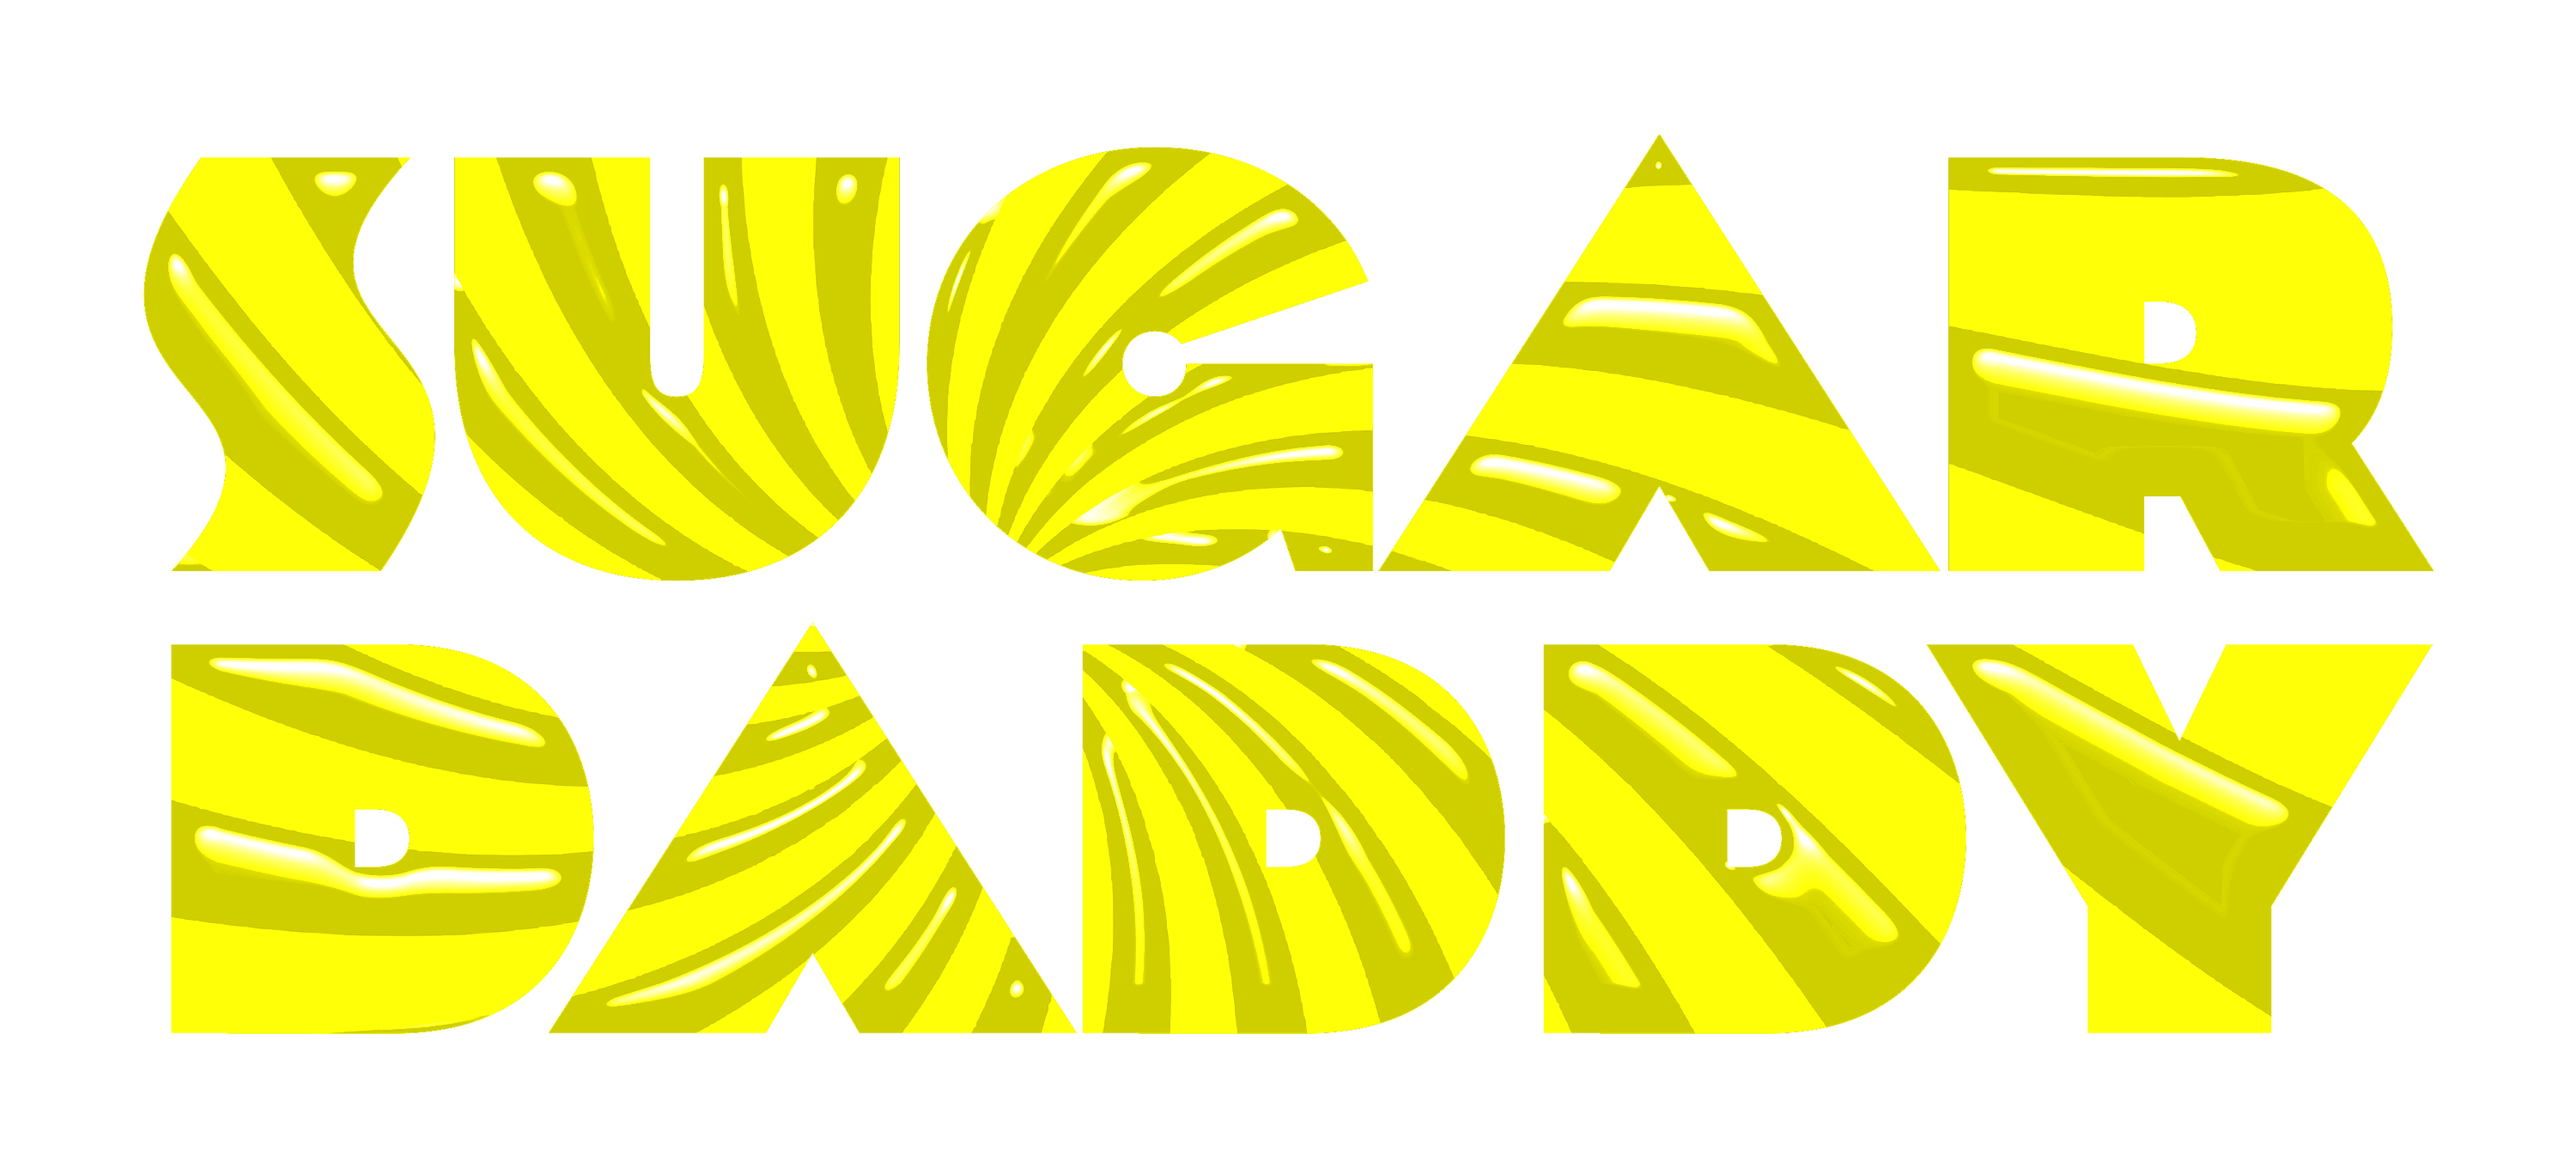 Sugar daddy header logo